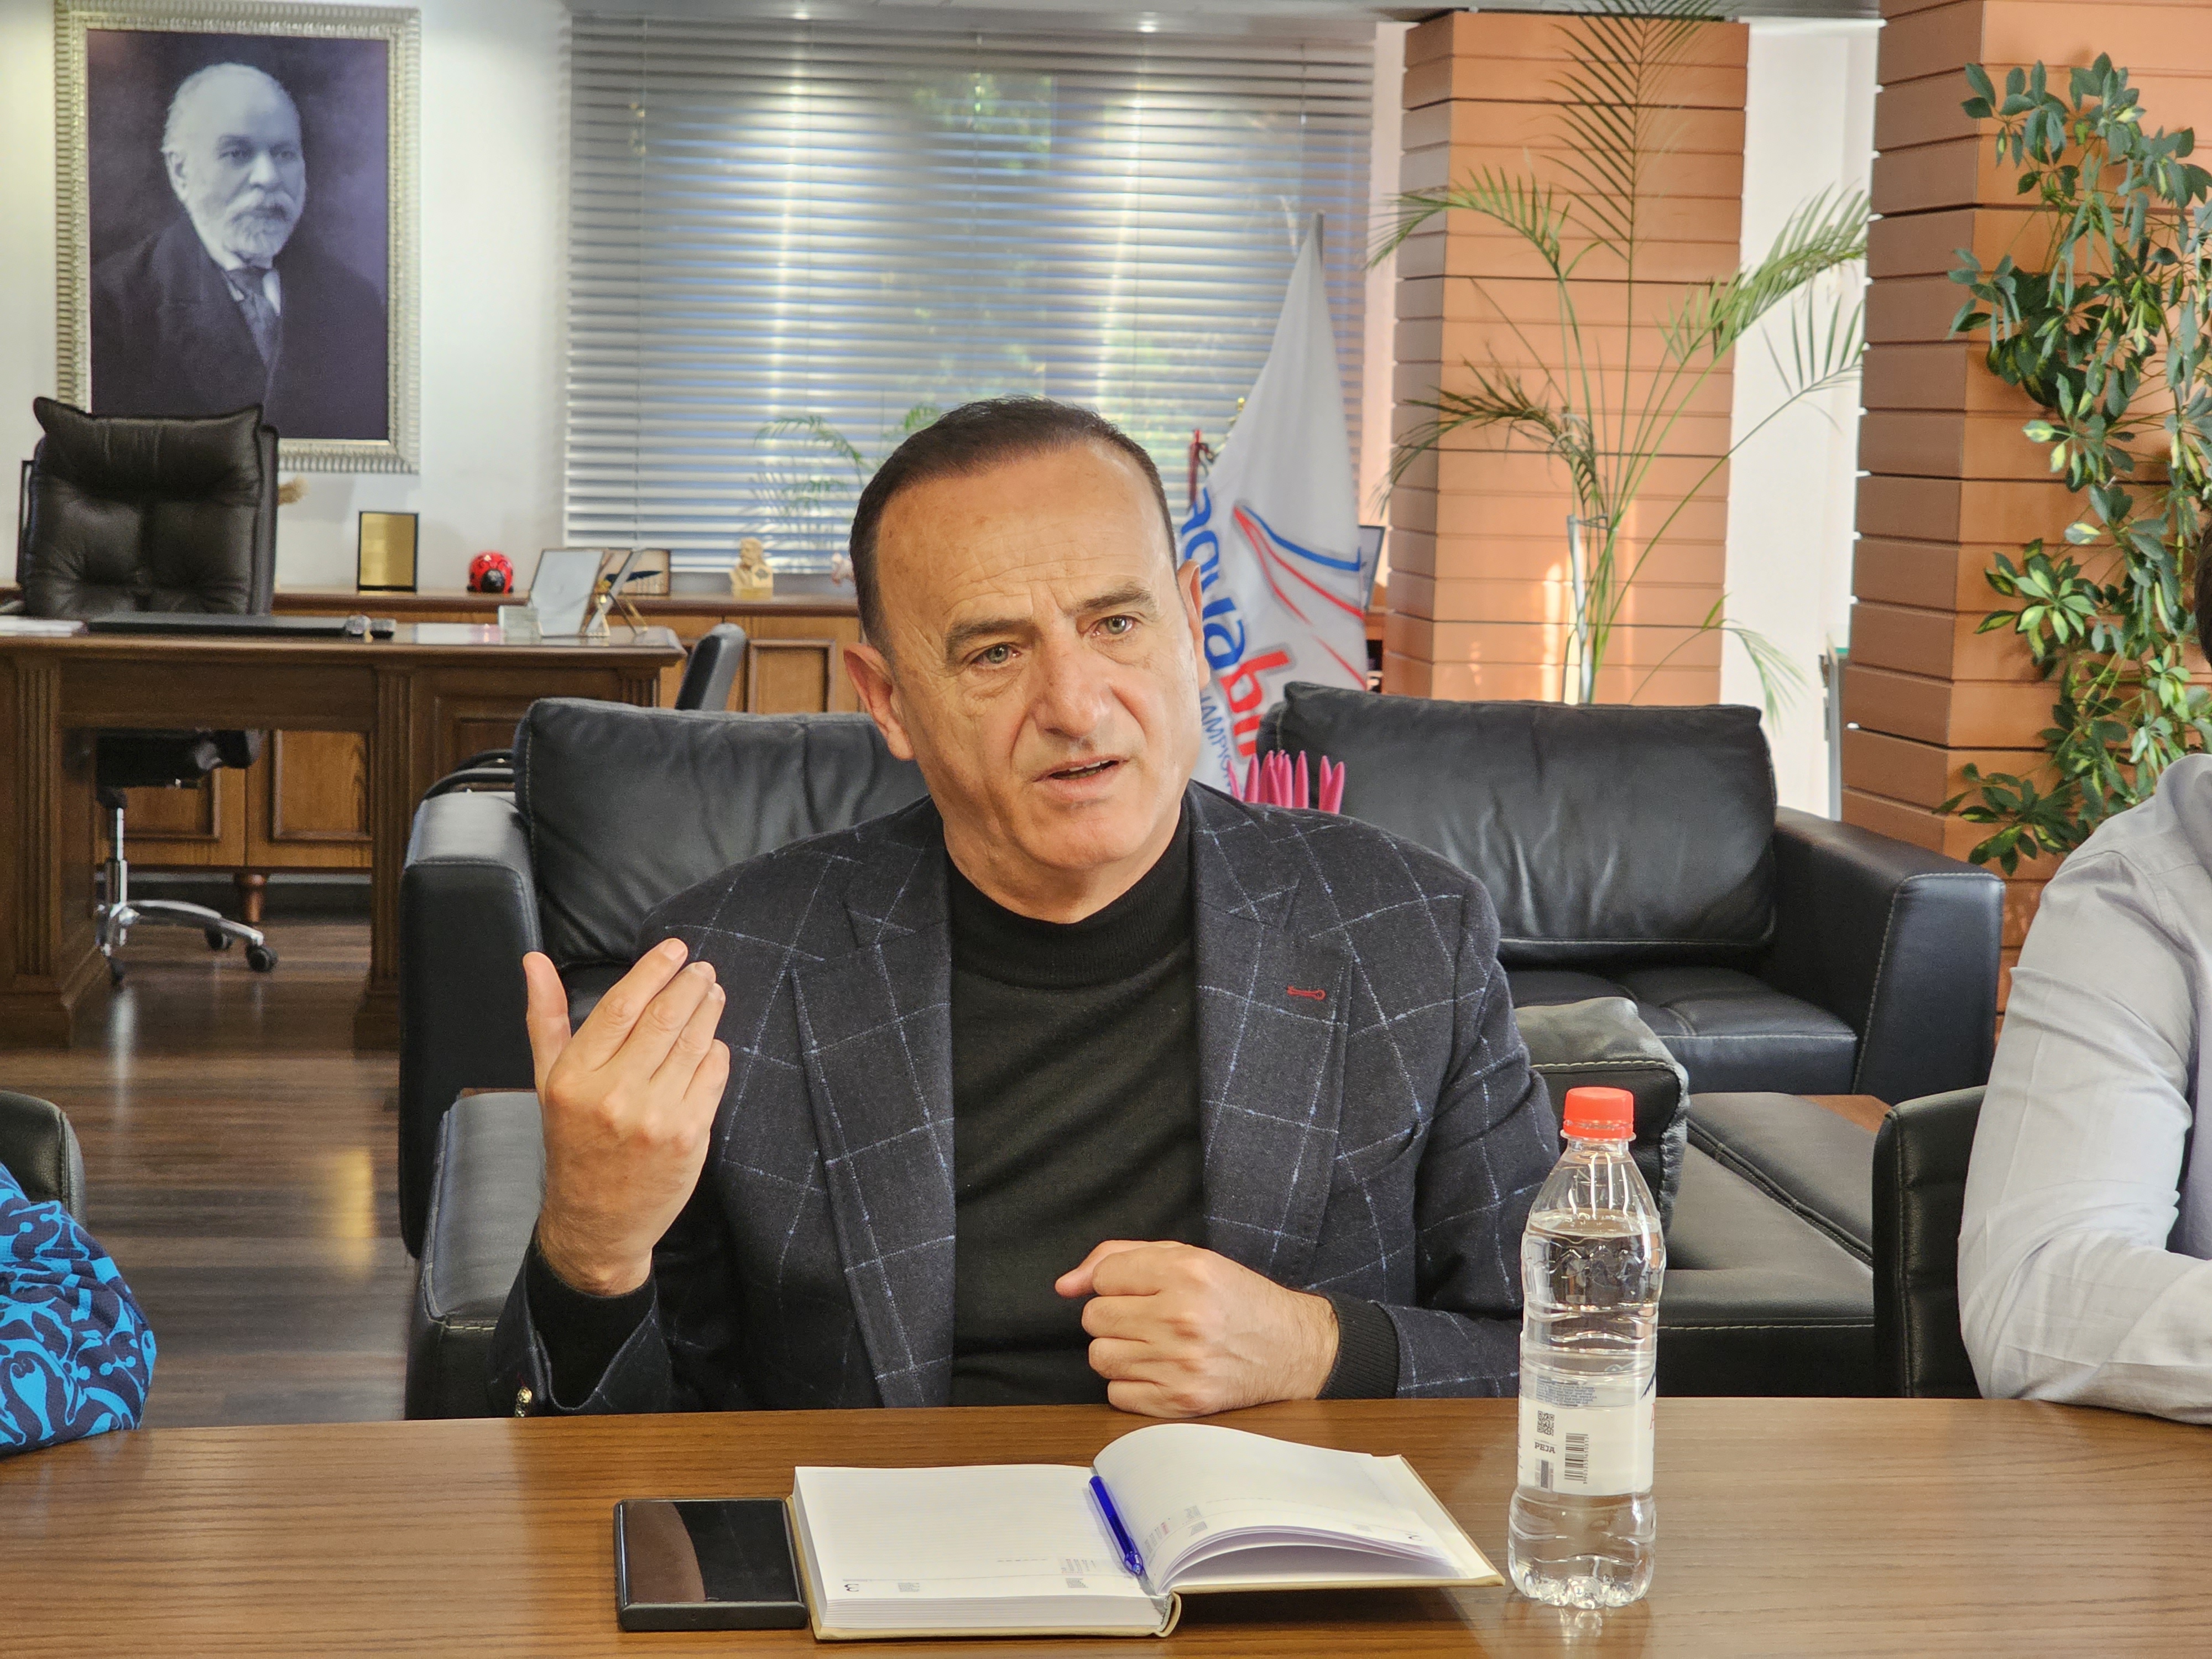 Kryetari Ilir Xhakolli pret në diskutim Ministrat Niko Peleshi dhe Arbjan Mazniku